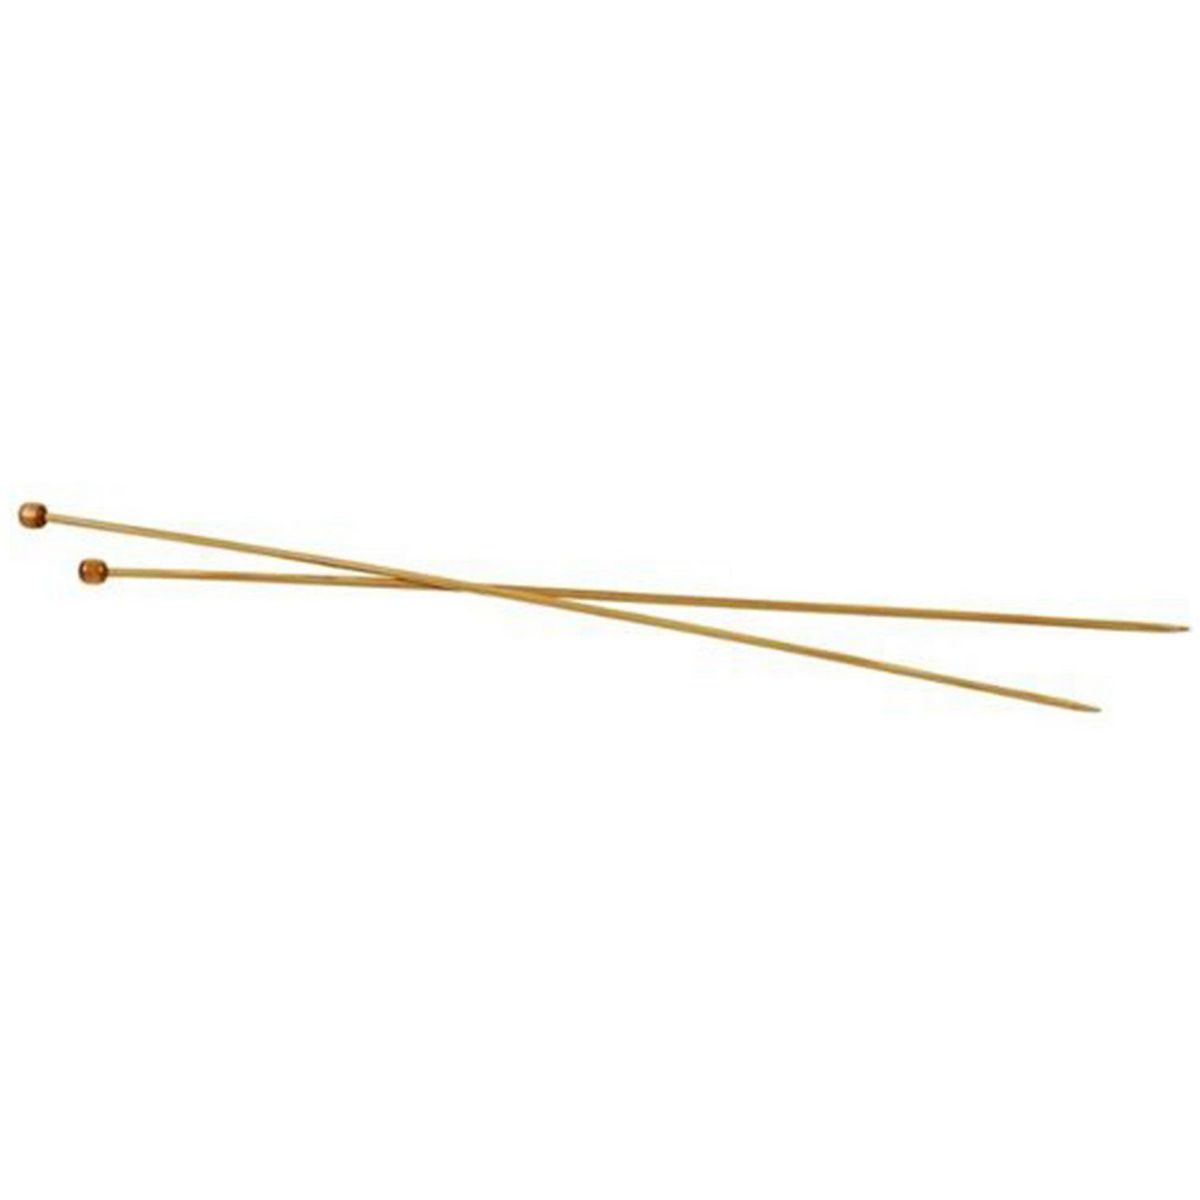  2 Aiguilles À Tricoter En Bambou 35 cm - Ø 3 mm